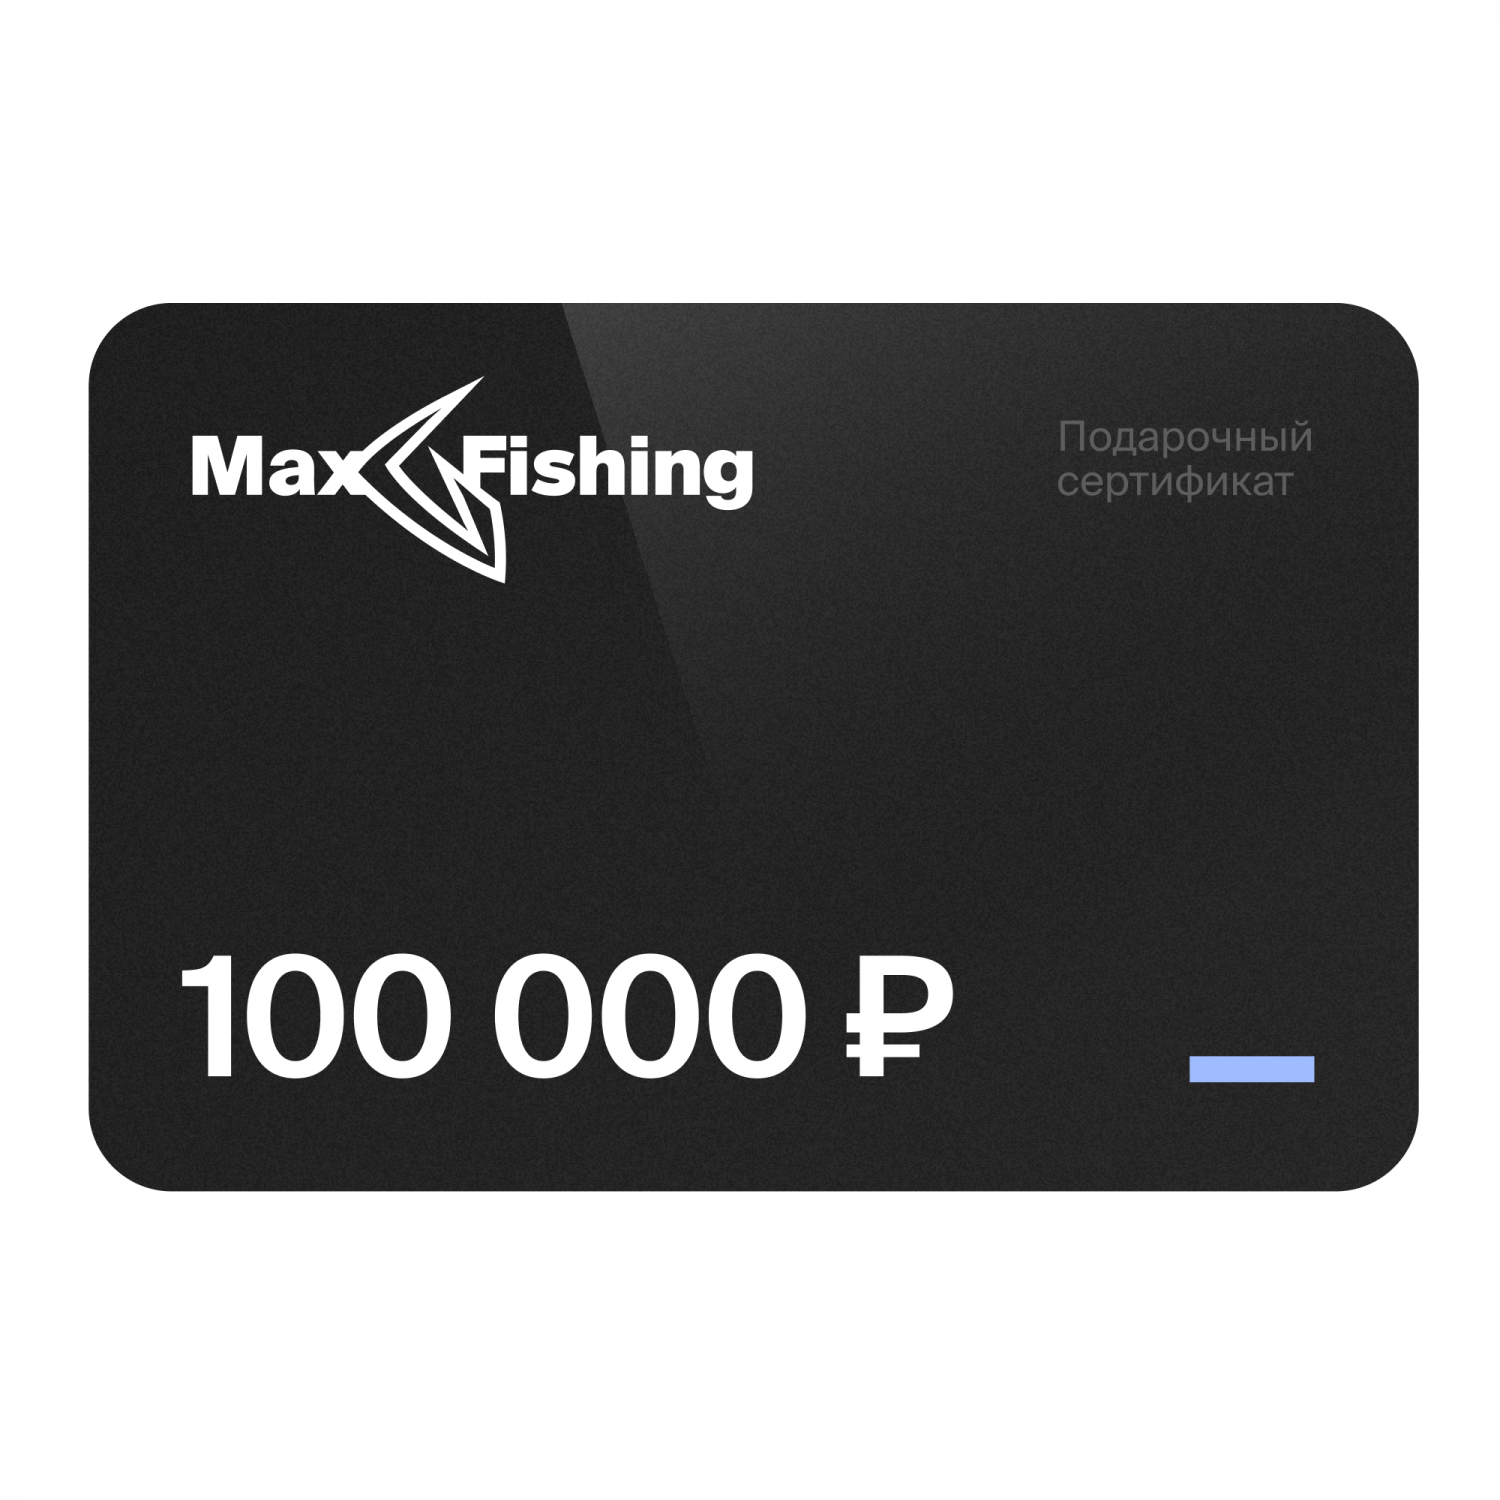 Подарочный сертификат MaxFishing 100 000 ₽ антиколлекторский подарок premium универсальный подарочный сертификат на 300 000 рублей